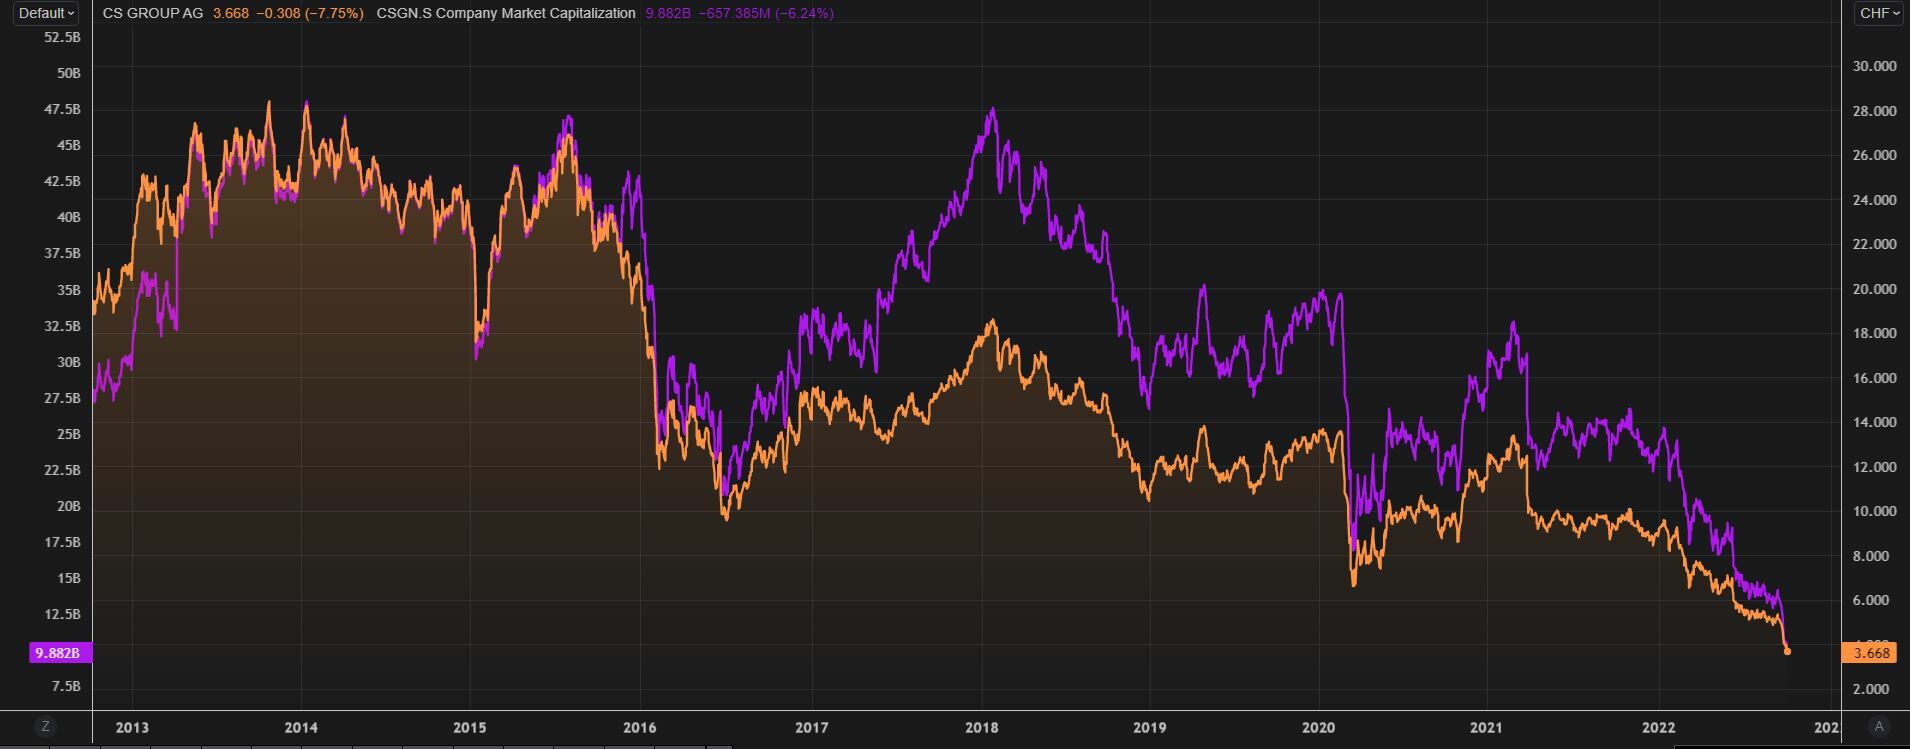 Evolucion acción Credit Suisse frente a su capitalización de mercado. Fuente: Reuters